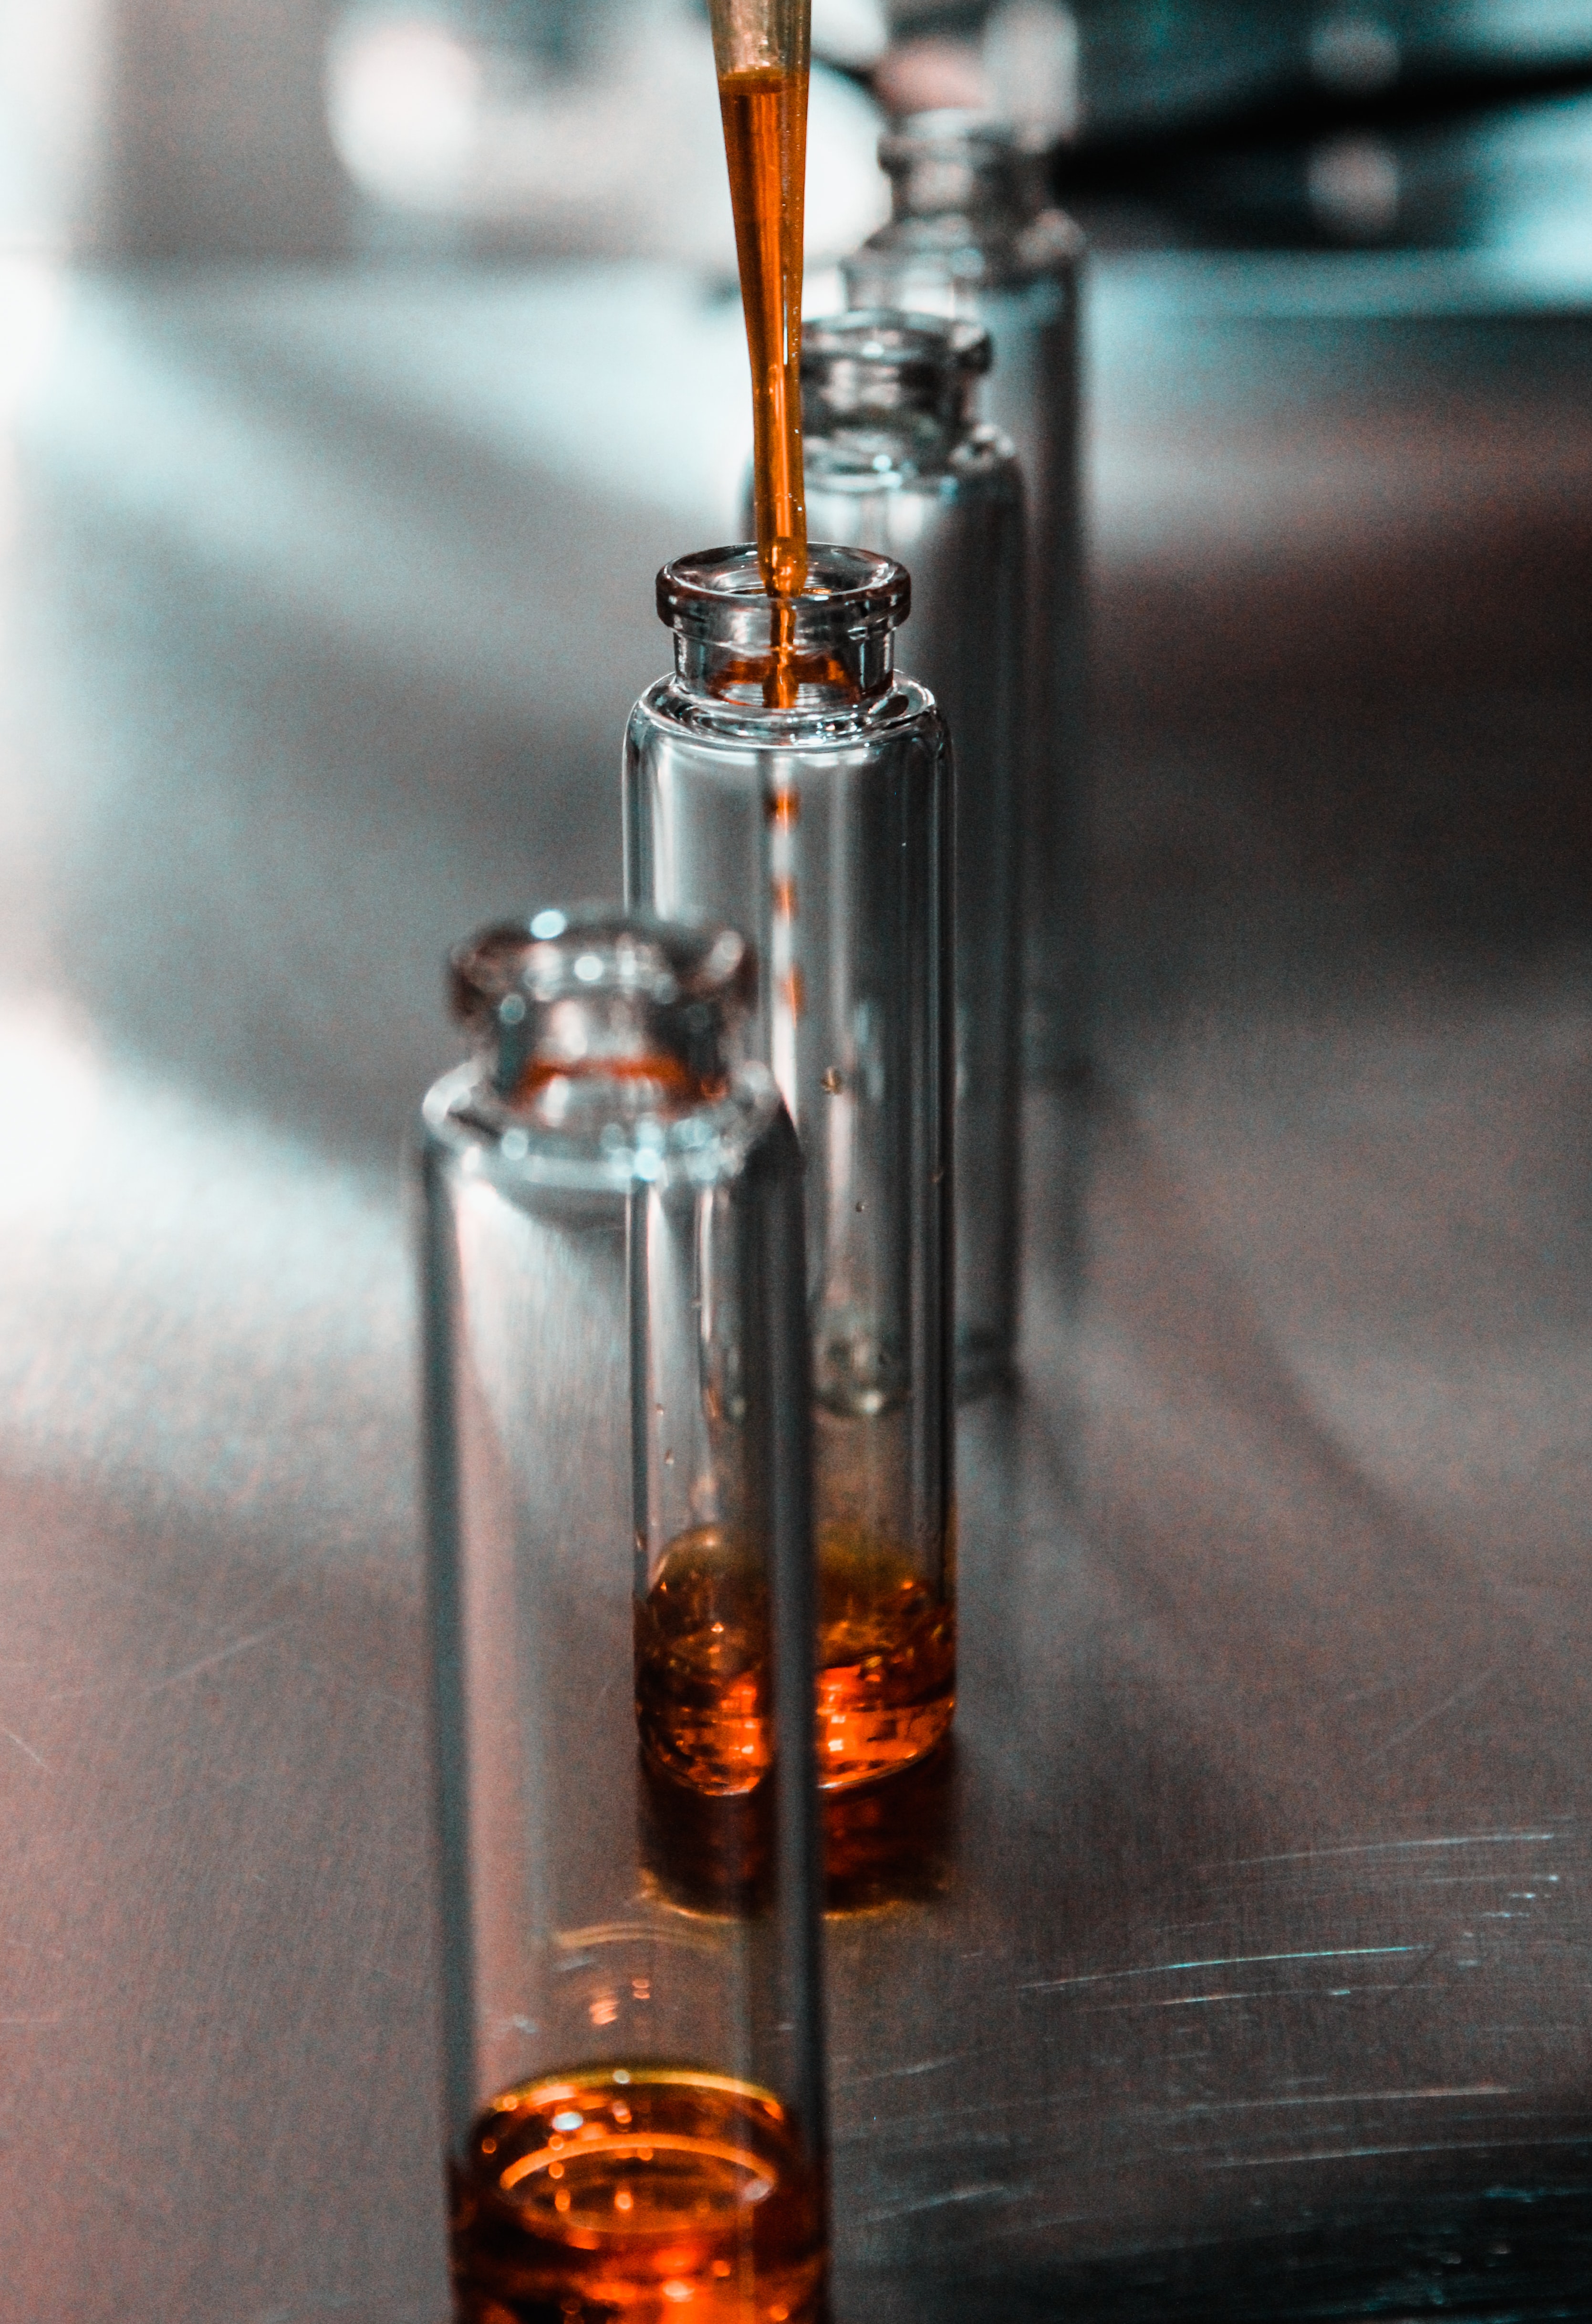 Small vials of liquid